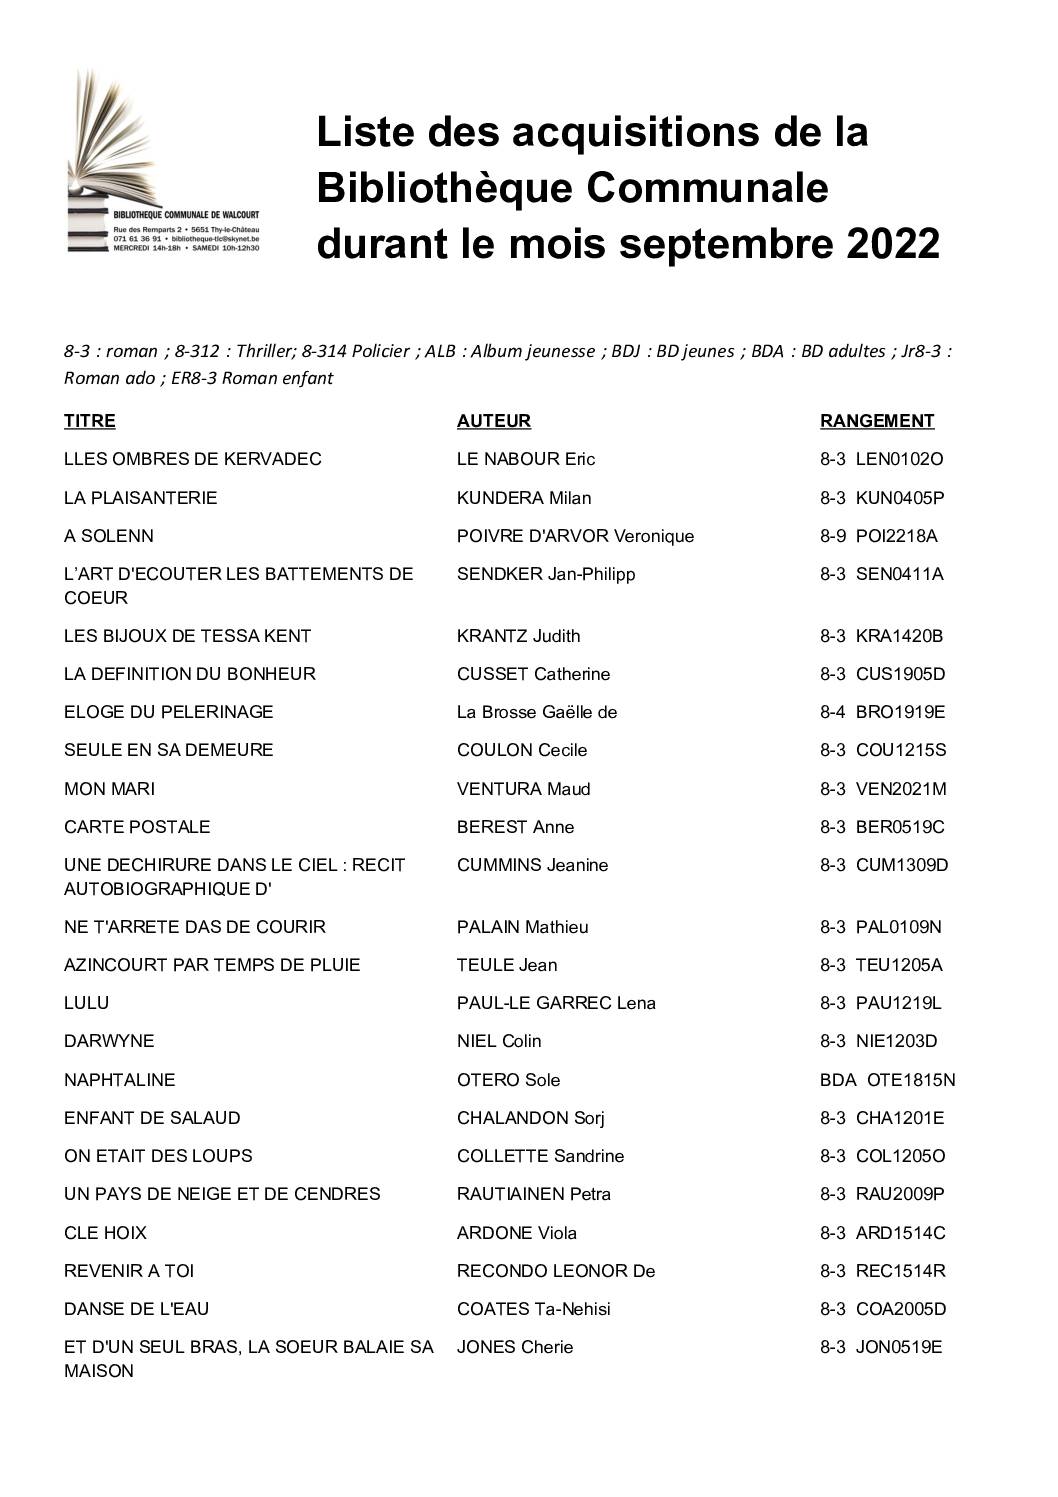 Liste des acquisitions de la Bibliothèque Communale durant le mois septembre 2022